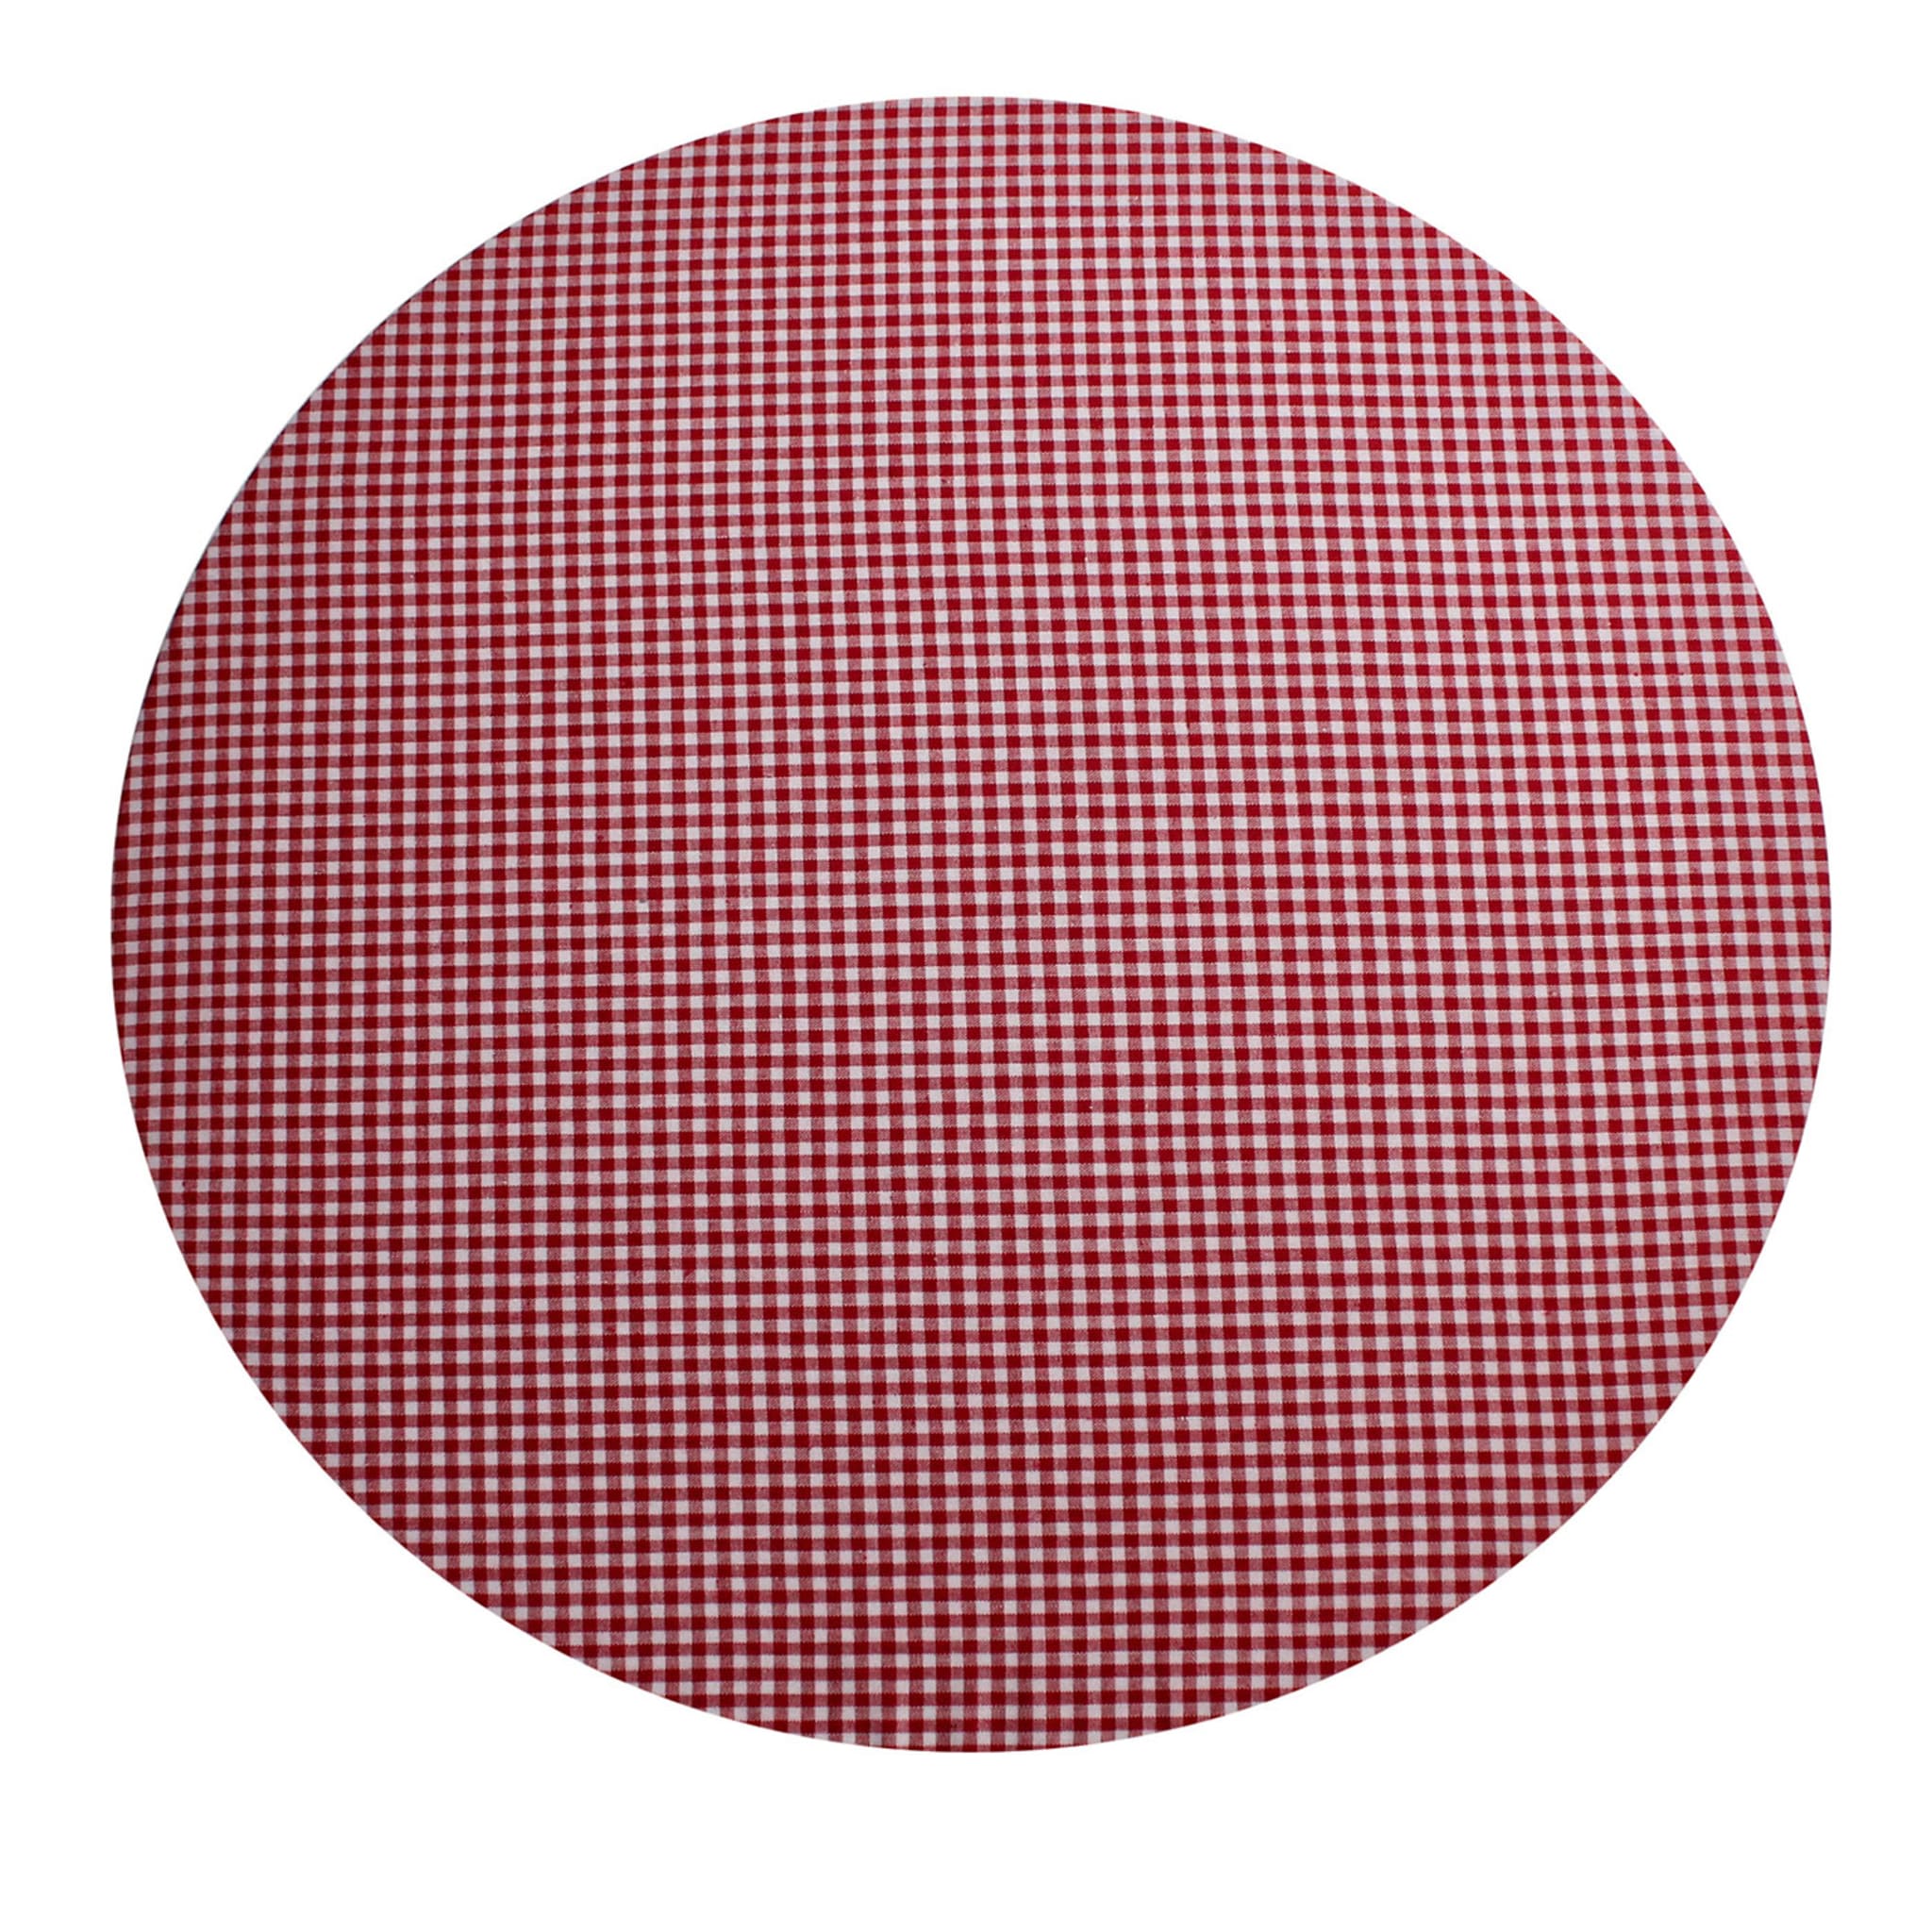 Napperon rond rouge et blanc à carreaux Cuffiette #1 - Vue principale